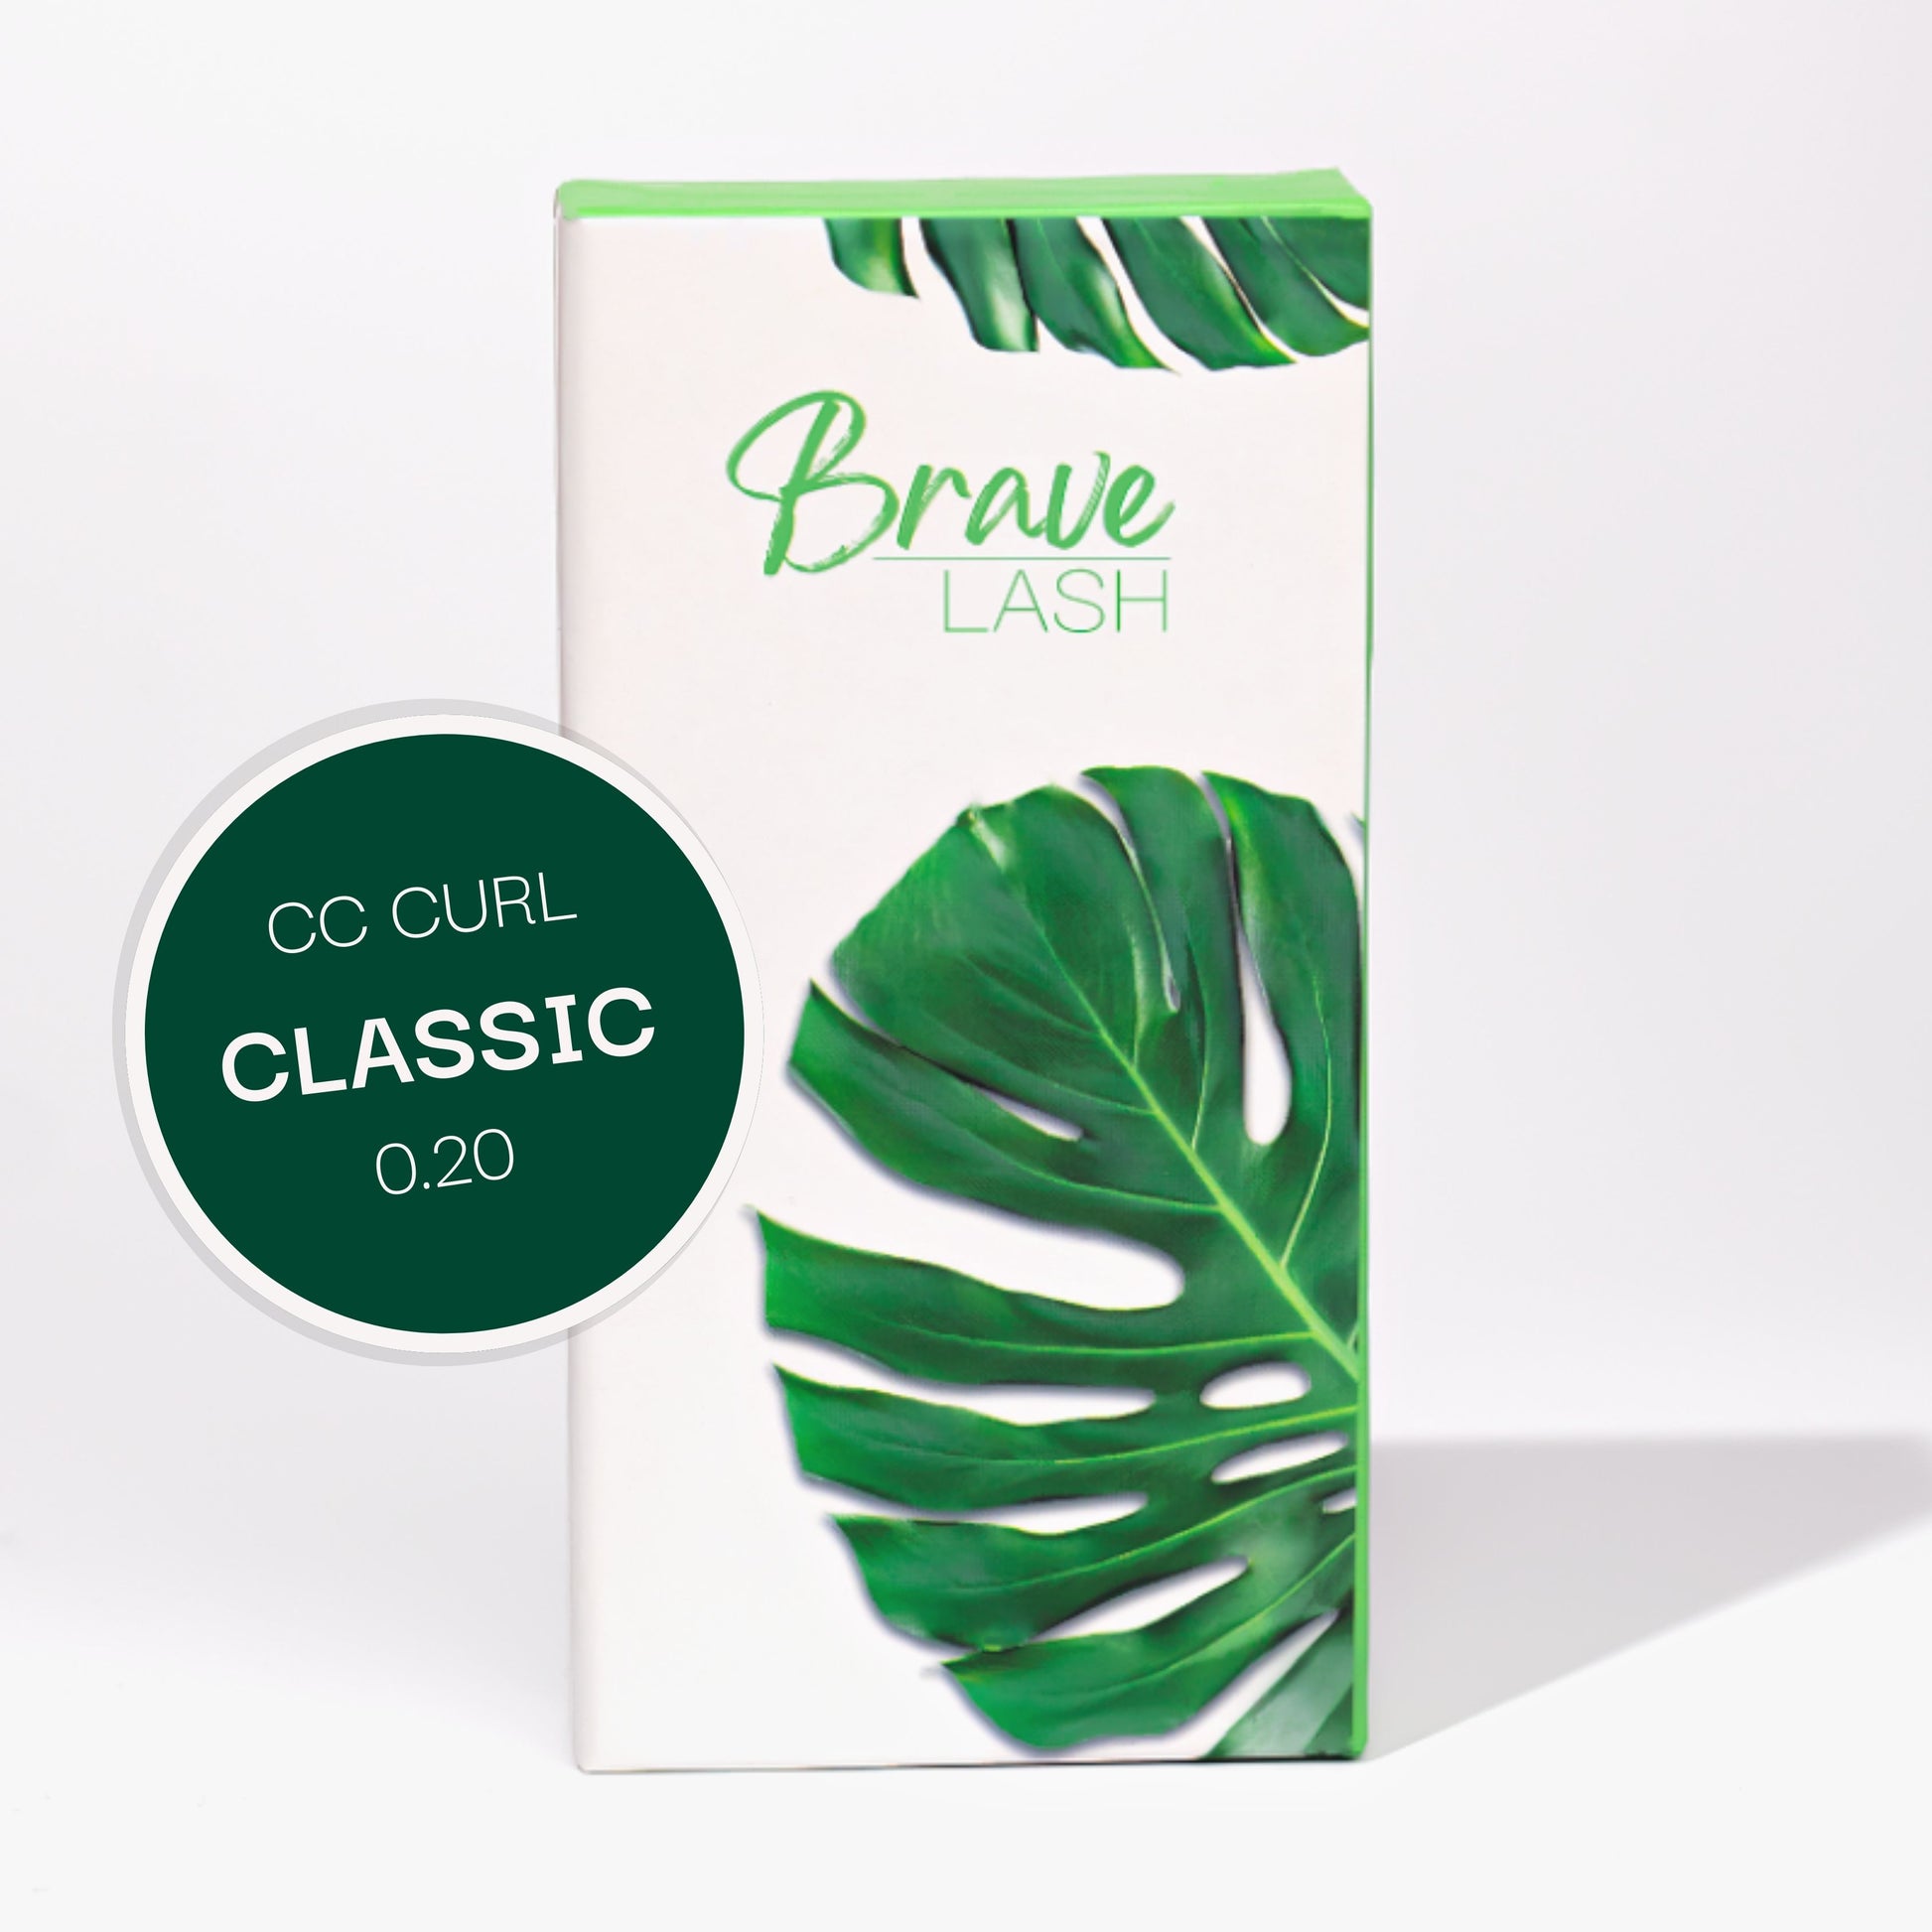 Classic Lash Tray - CC Curl 0.20 – Brave Lash